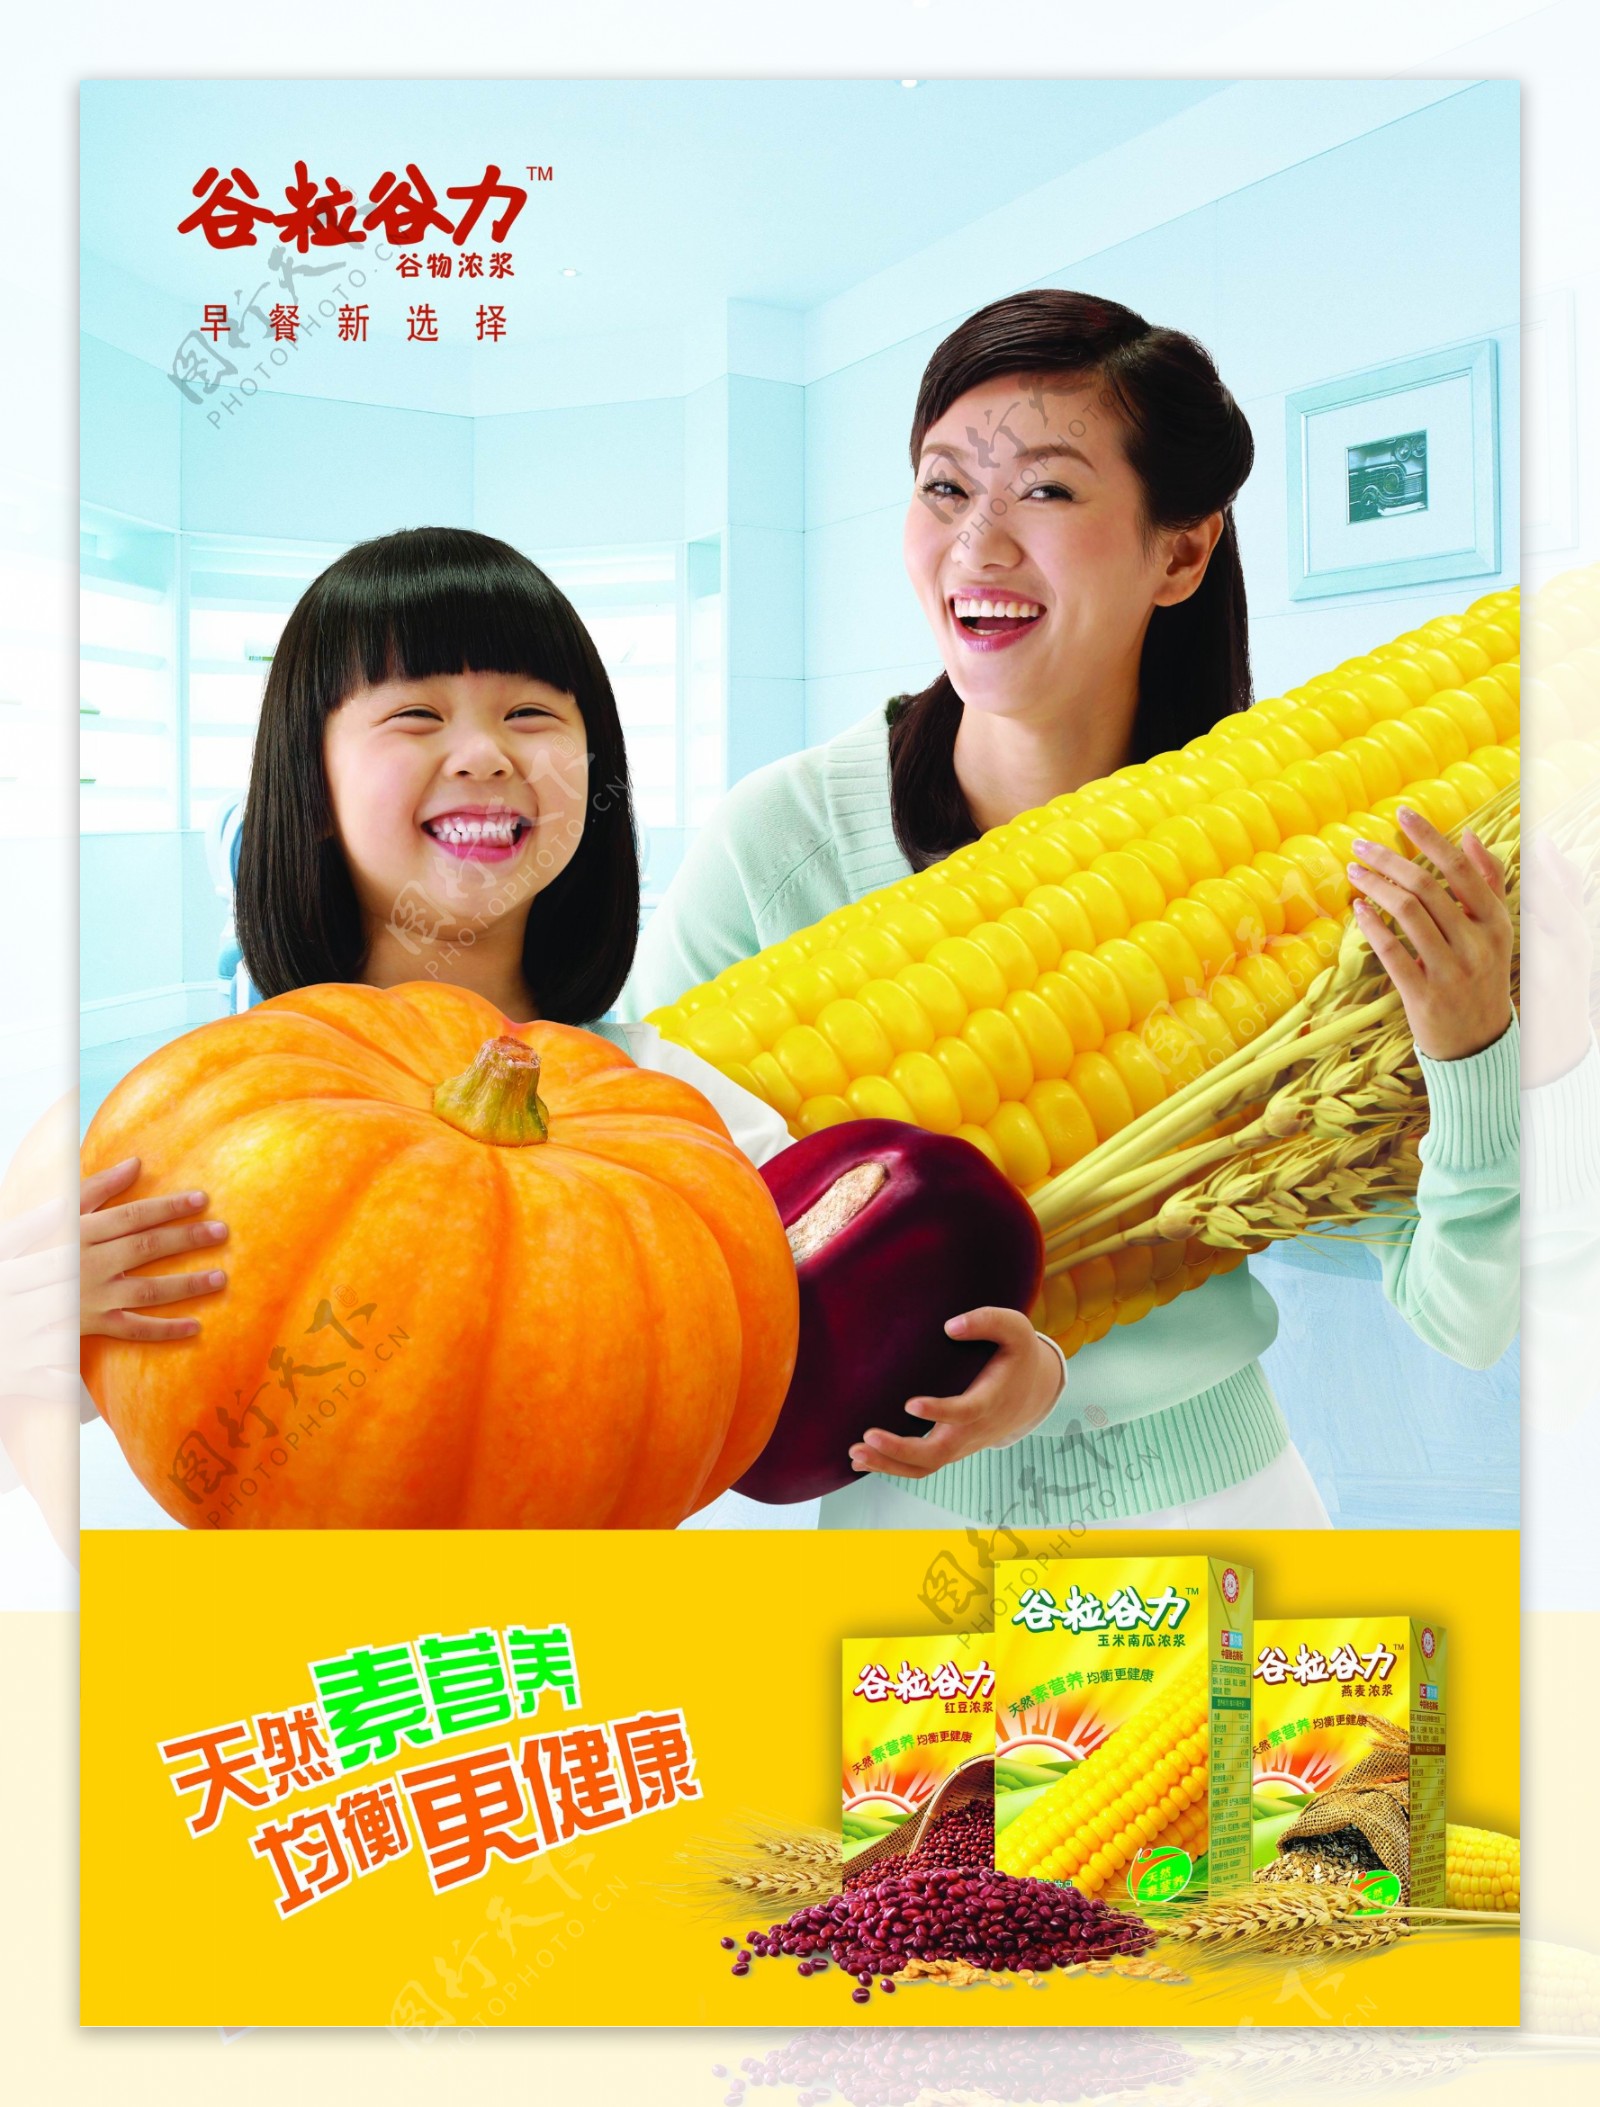 玉米浓浆饮料广告